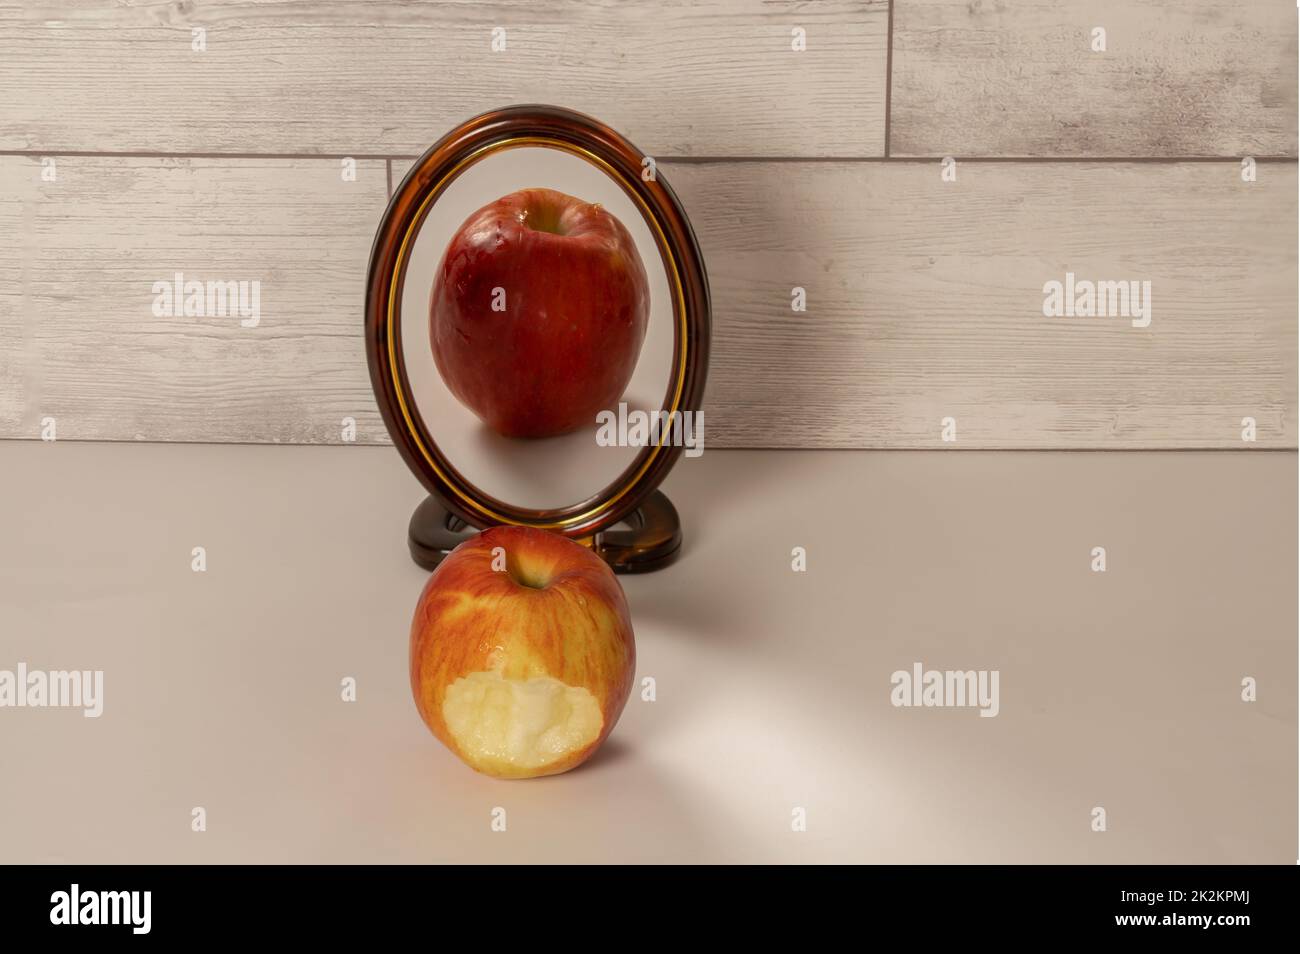 une pomme rouge mordue se reflète dans un miroir Banque D'Images